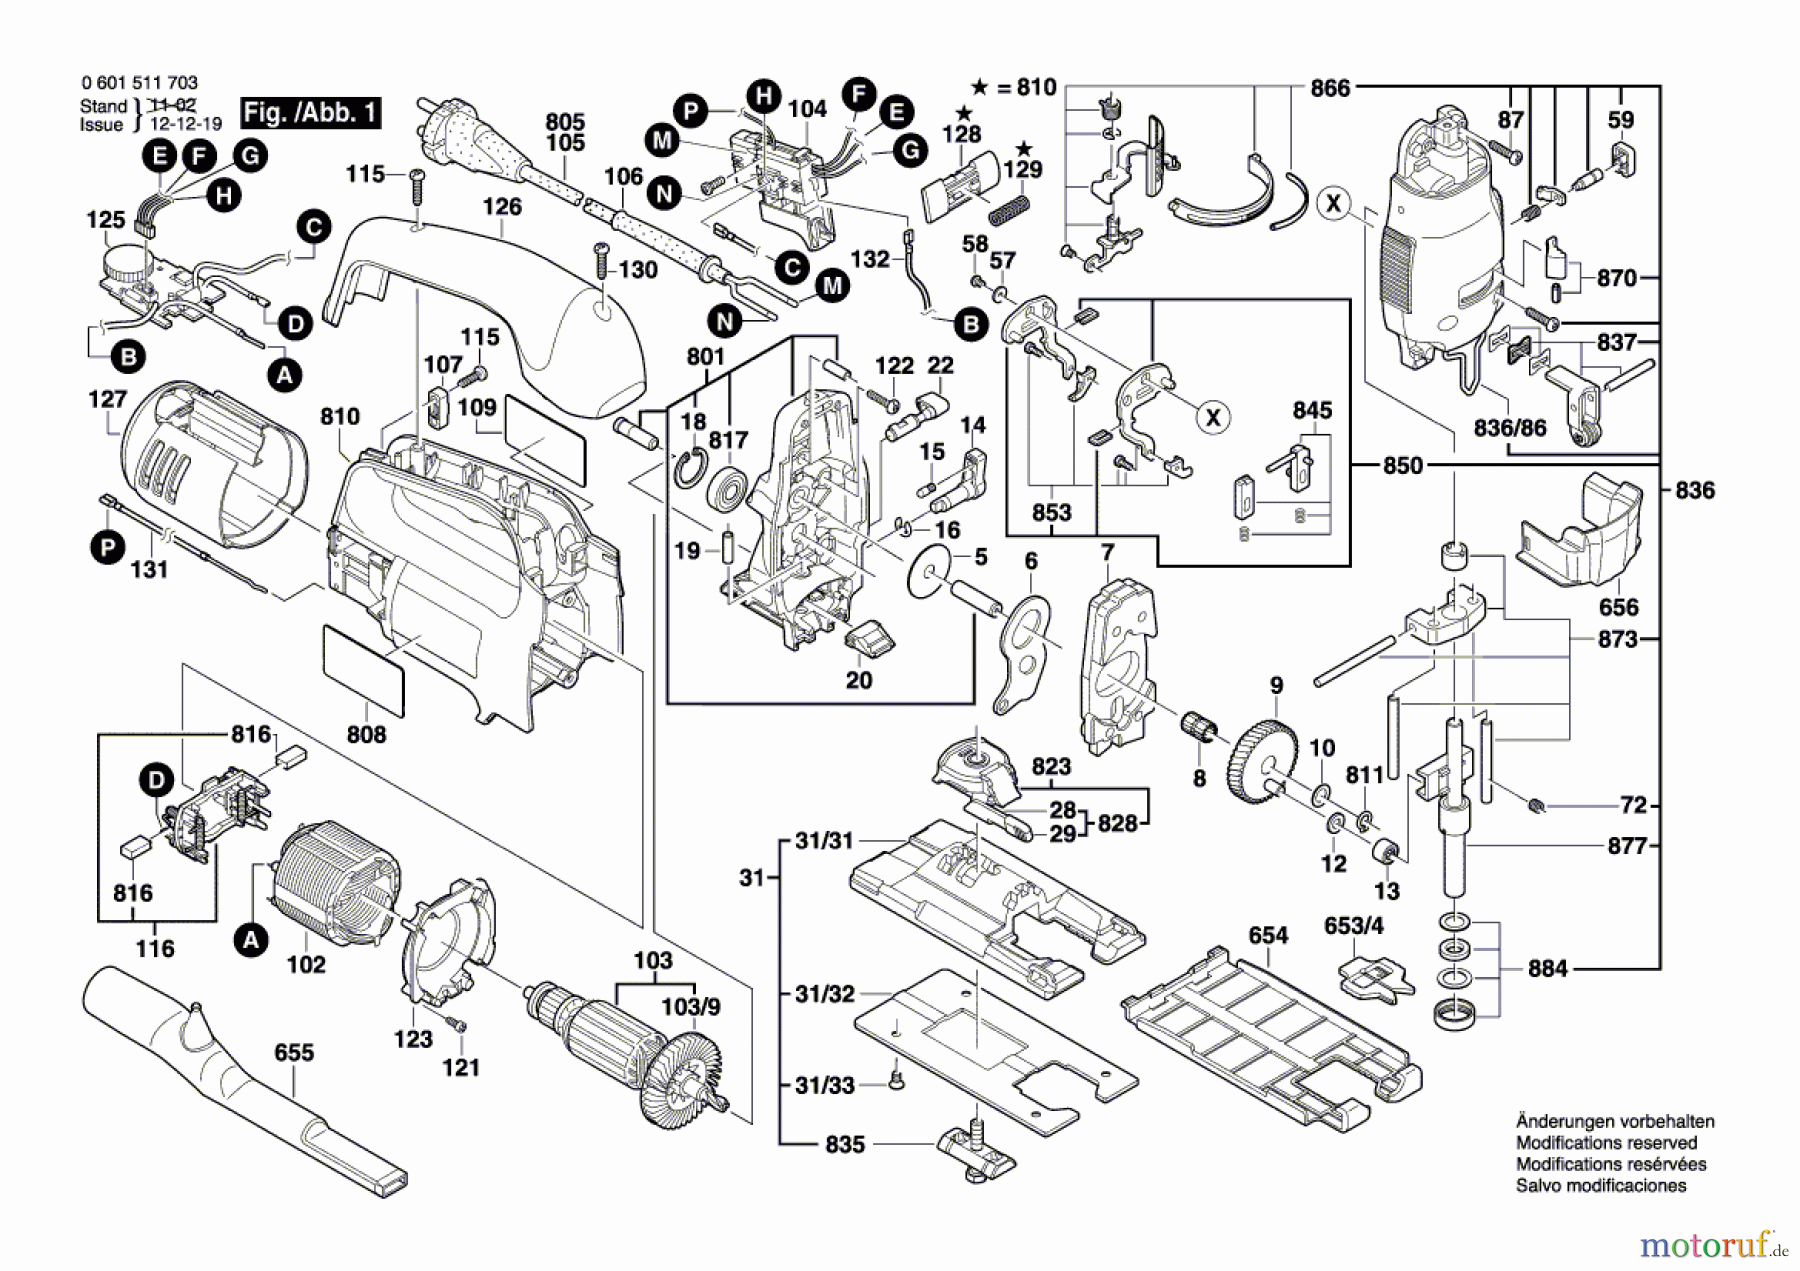  Bosch Werkzeug Stichsäge STP 135-B Seite 1